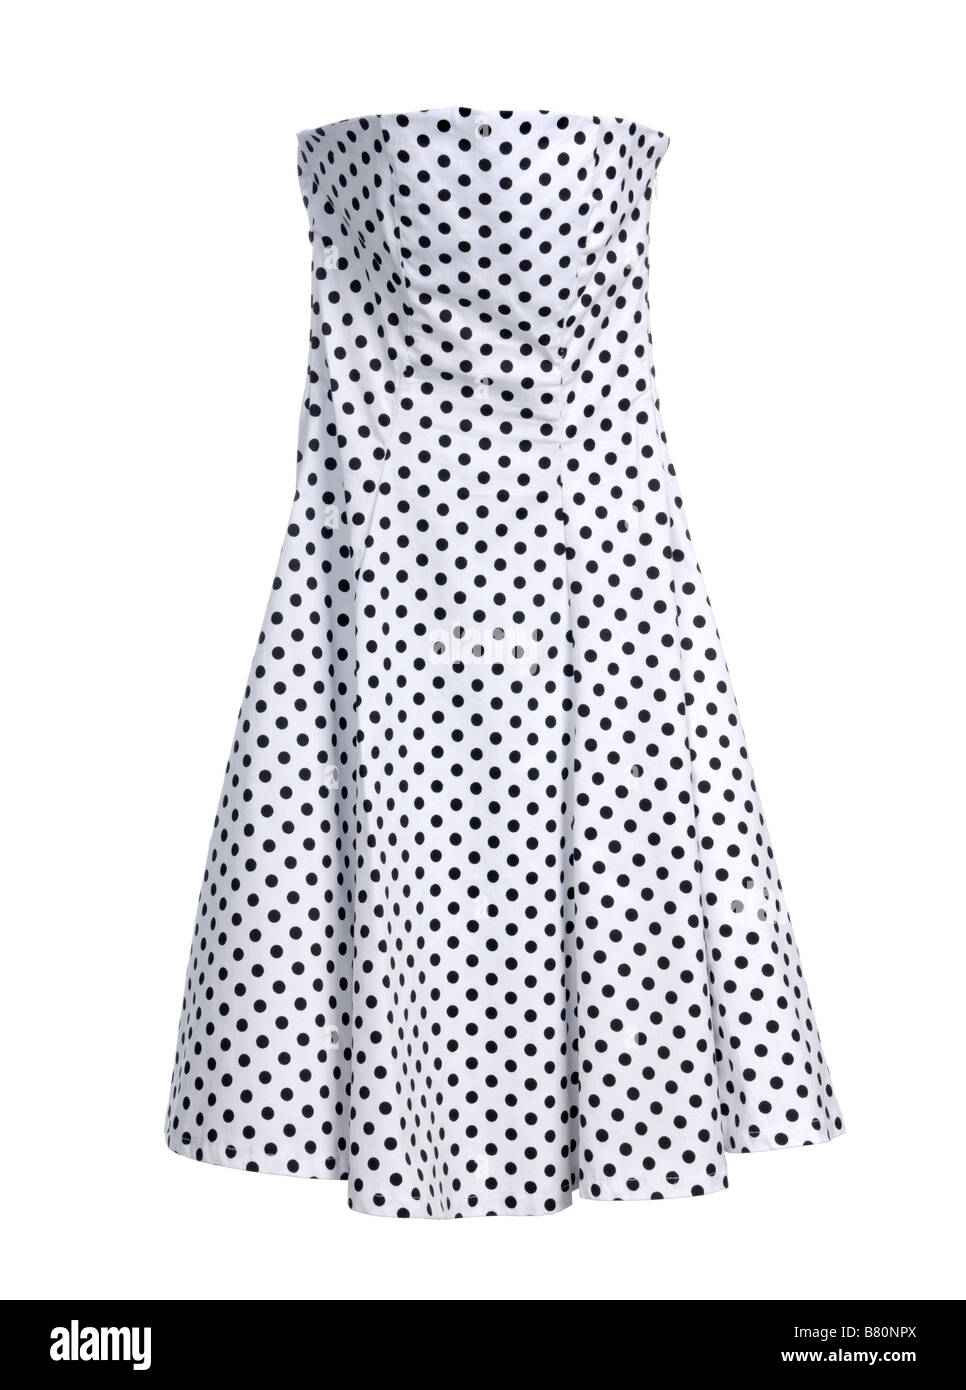 White polka dot dress Stock Photo